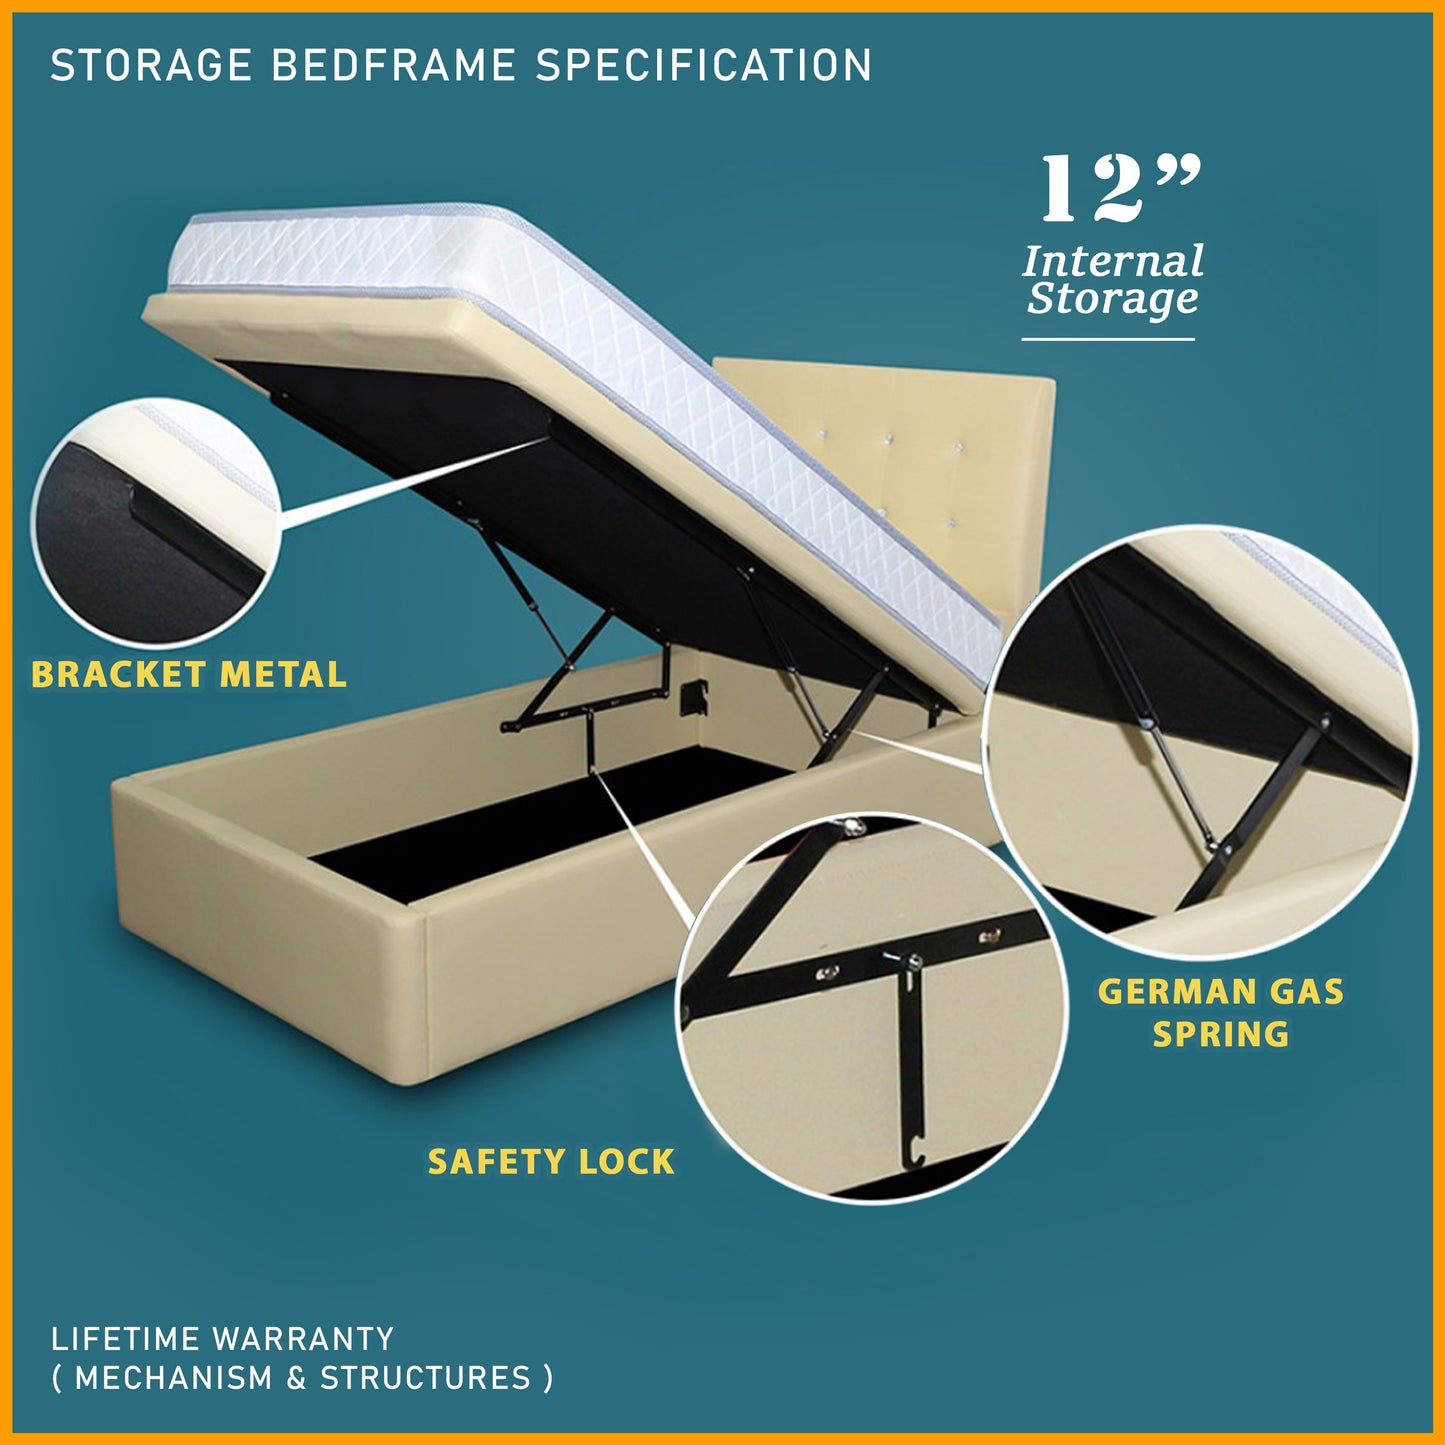 Storage Bedframe with 10" Spring Mattress | 88